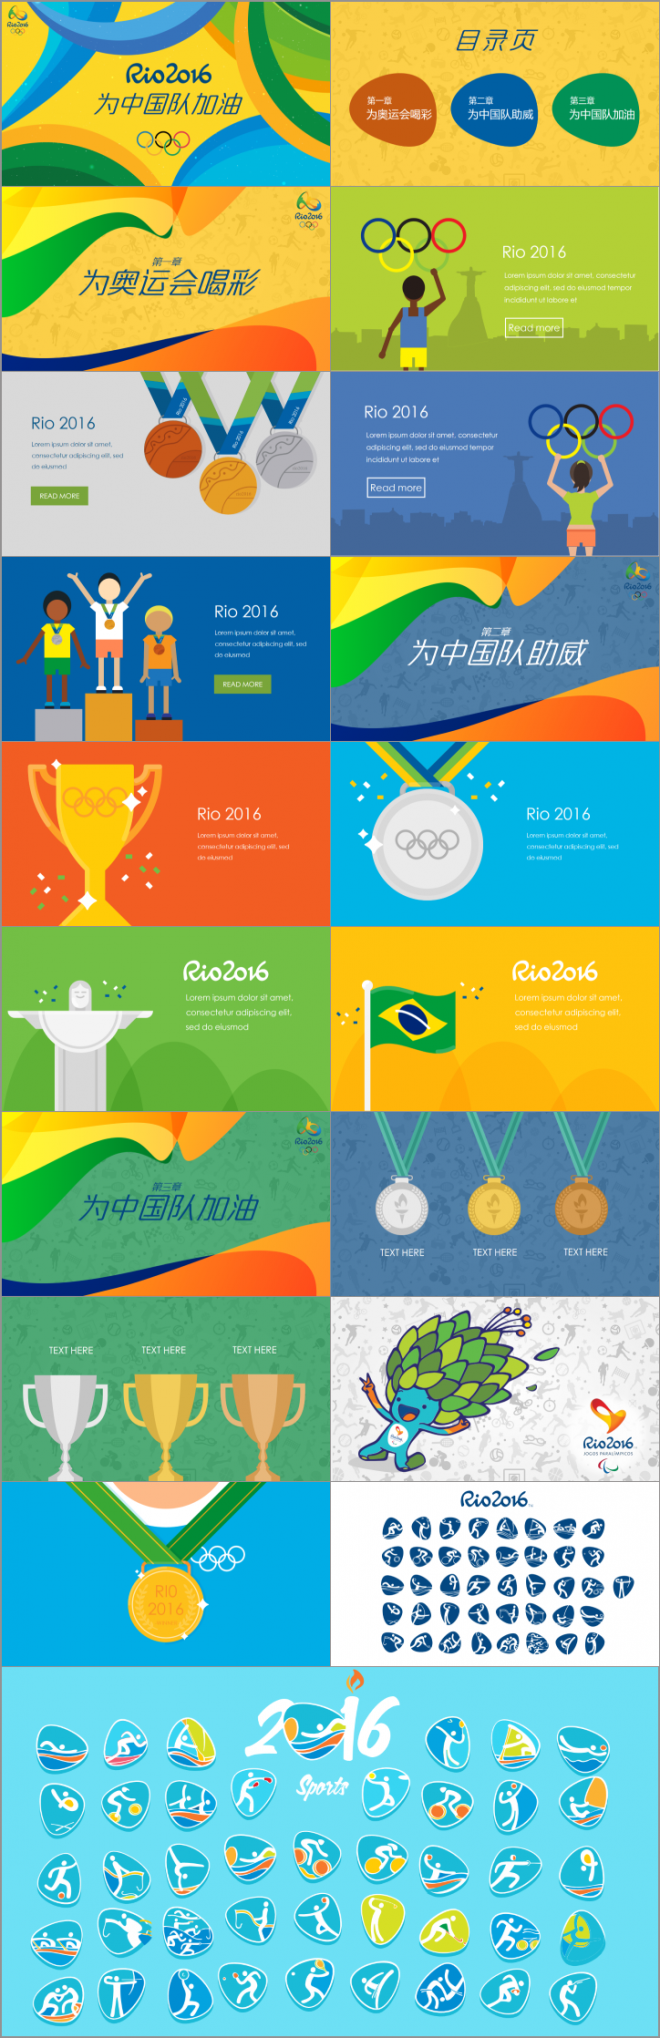 2016里约奥运会PPT模板免费下载